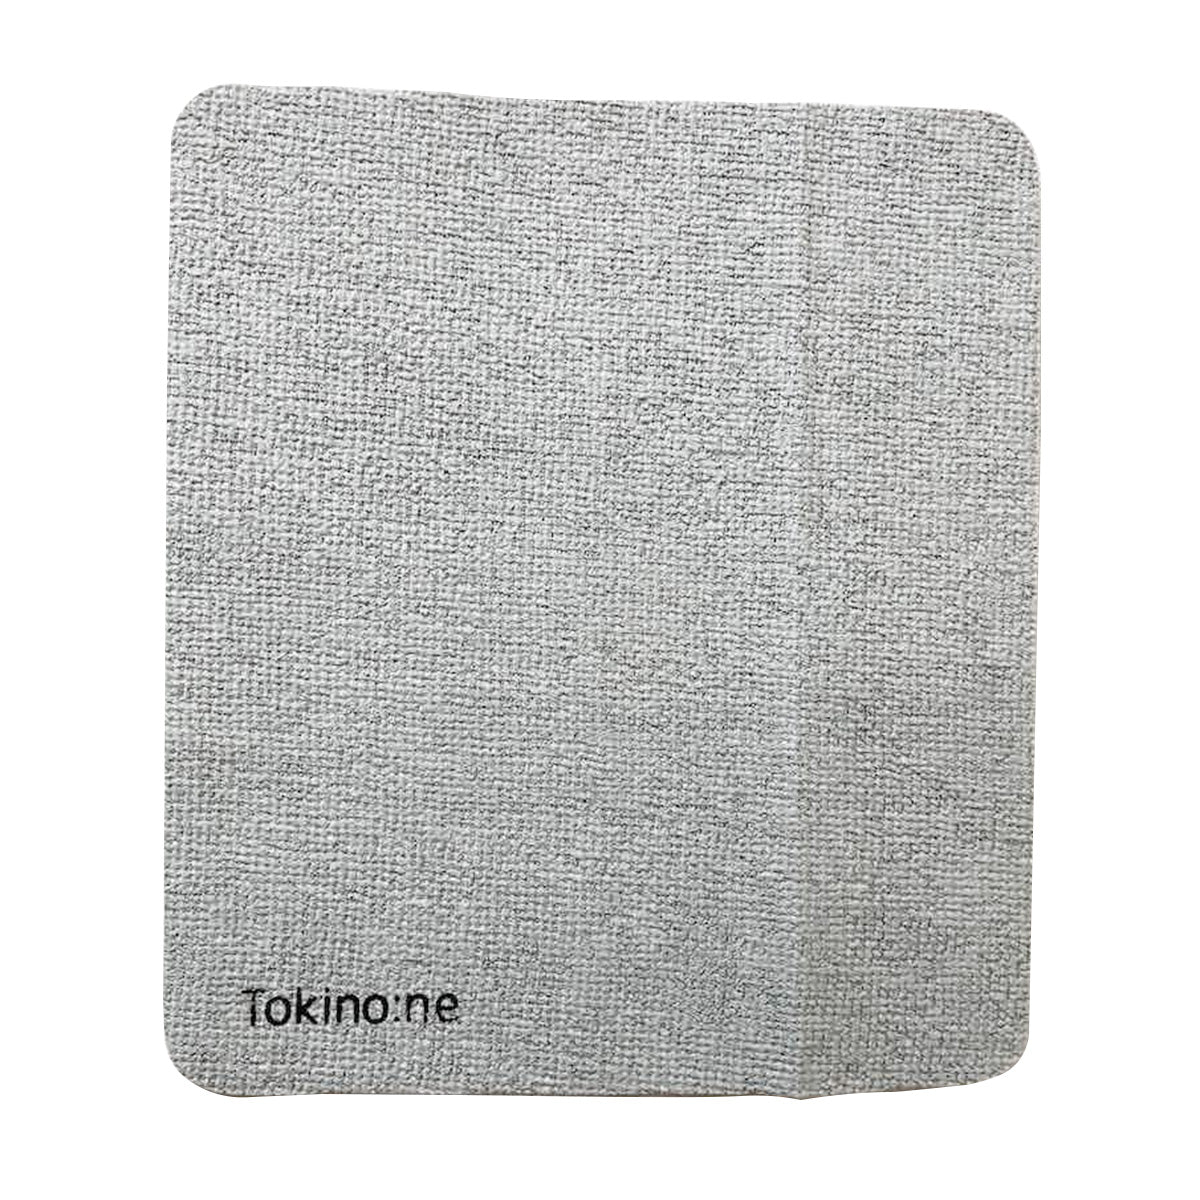 ダスター クロス 雑巾 Tokinone PB.吸水ワイパークロス 約205×230mm 1枚   9001/055010